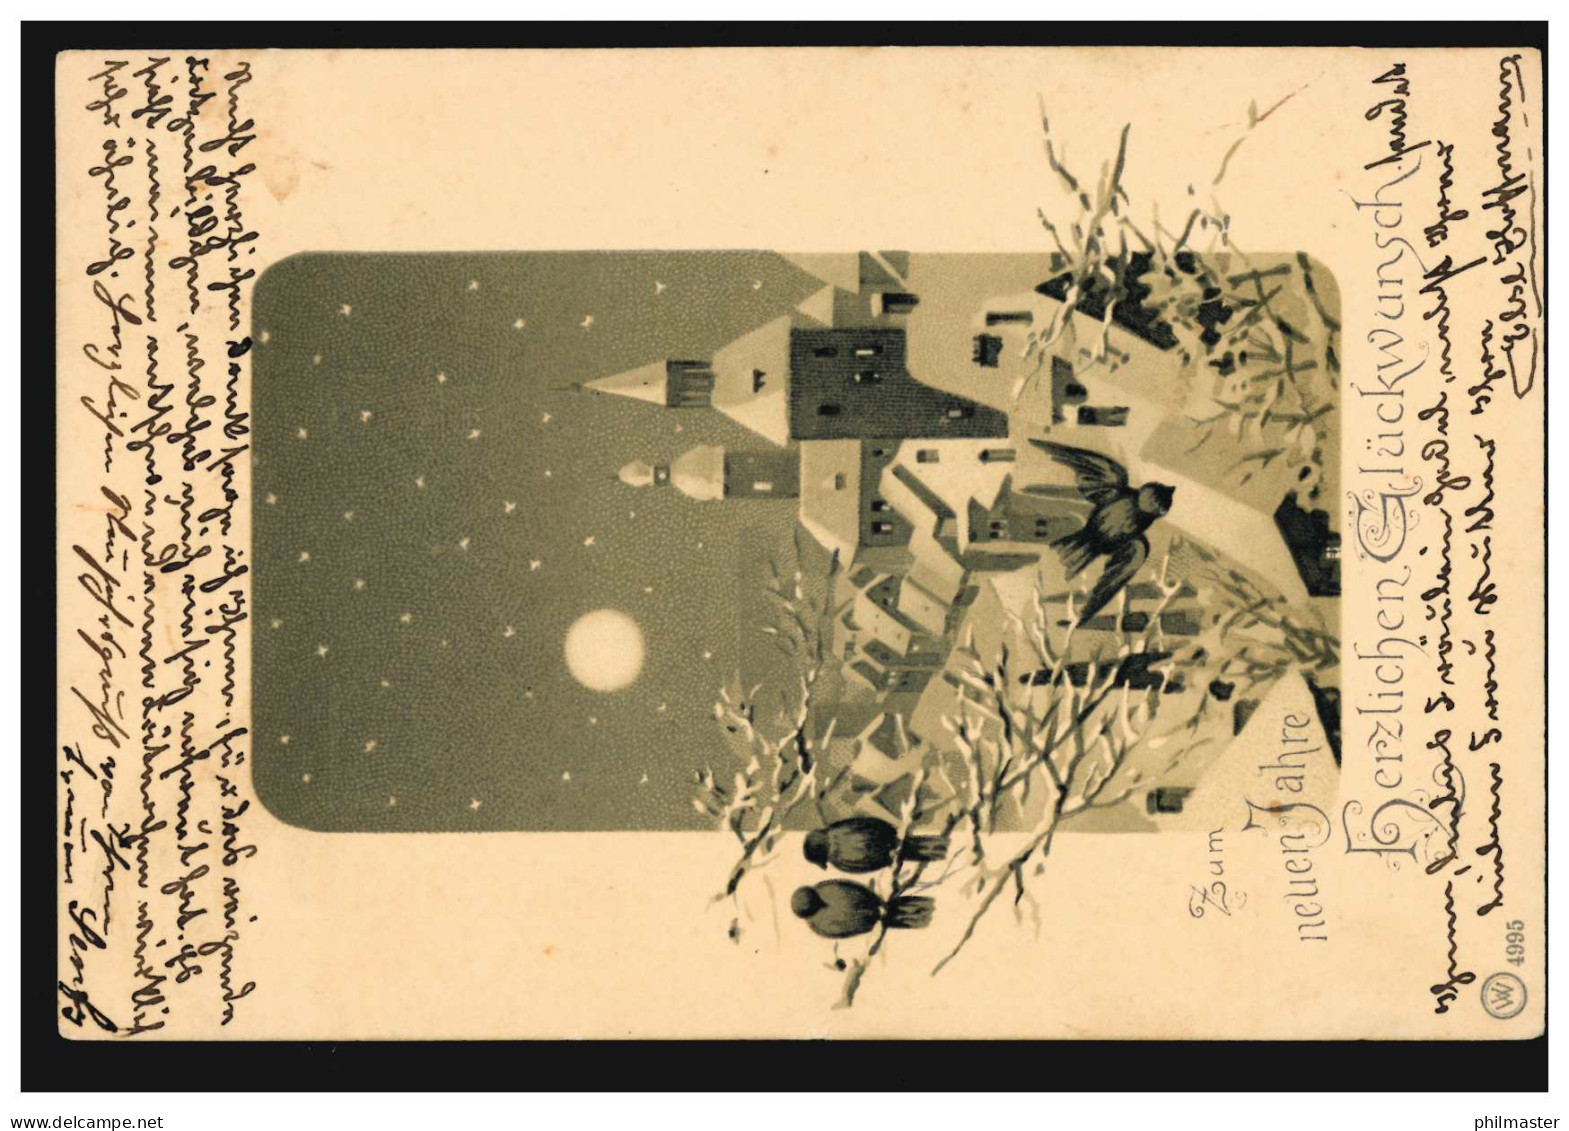 Ansichtskarte Neujahr Stadtbild Mit Vögeln, LEIPZIG 30.12.1902 N. DRESDEN 31.12. - Neujahr